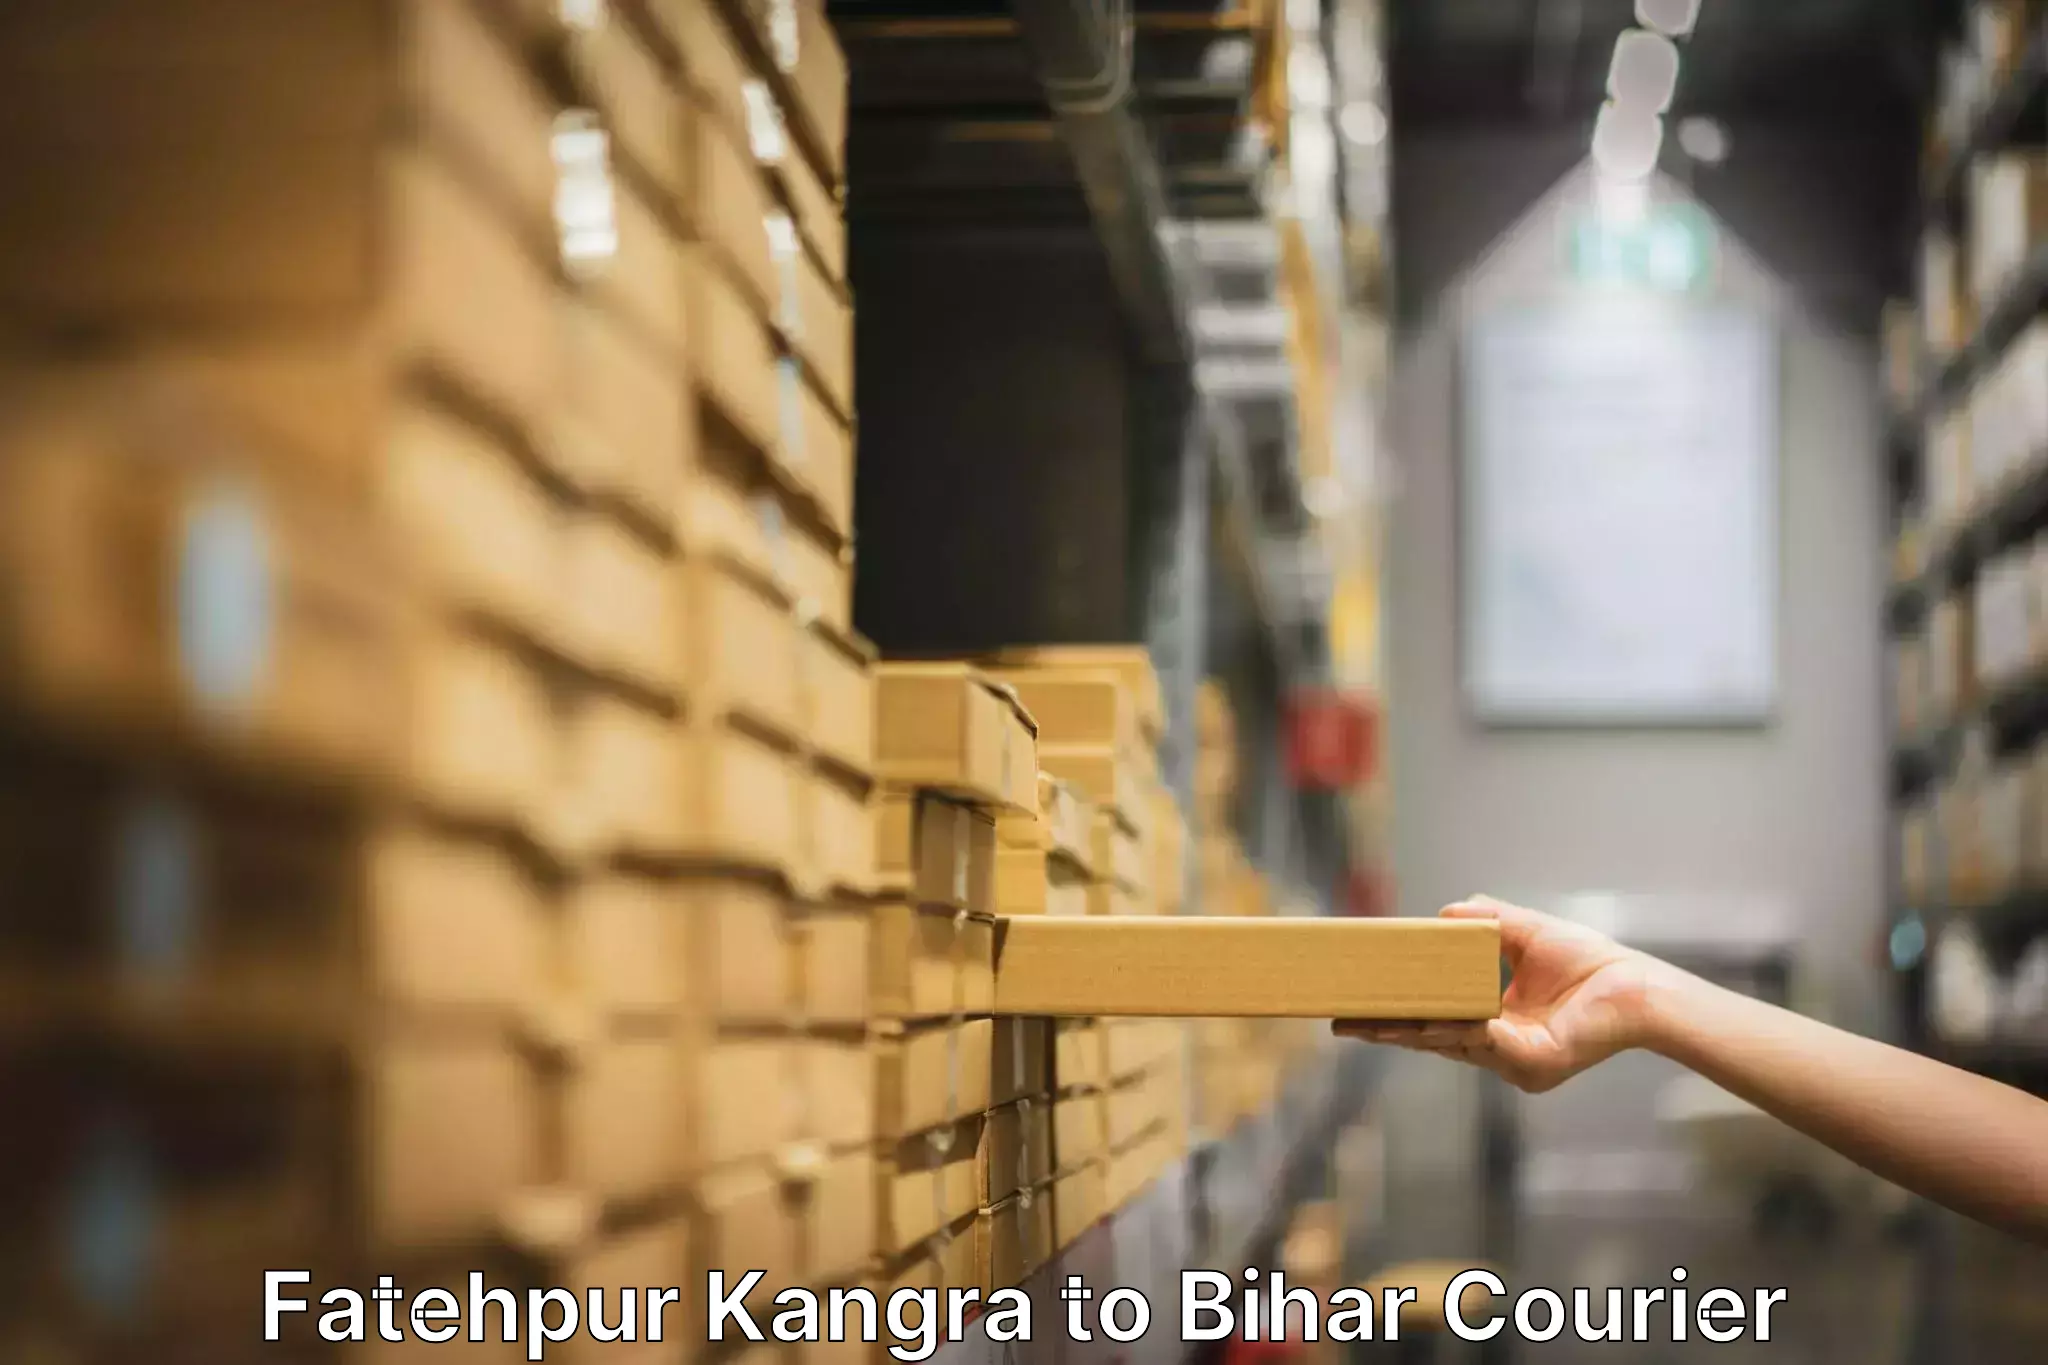 Home furniture shifting Fatehpur Kangra to Bihar